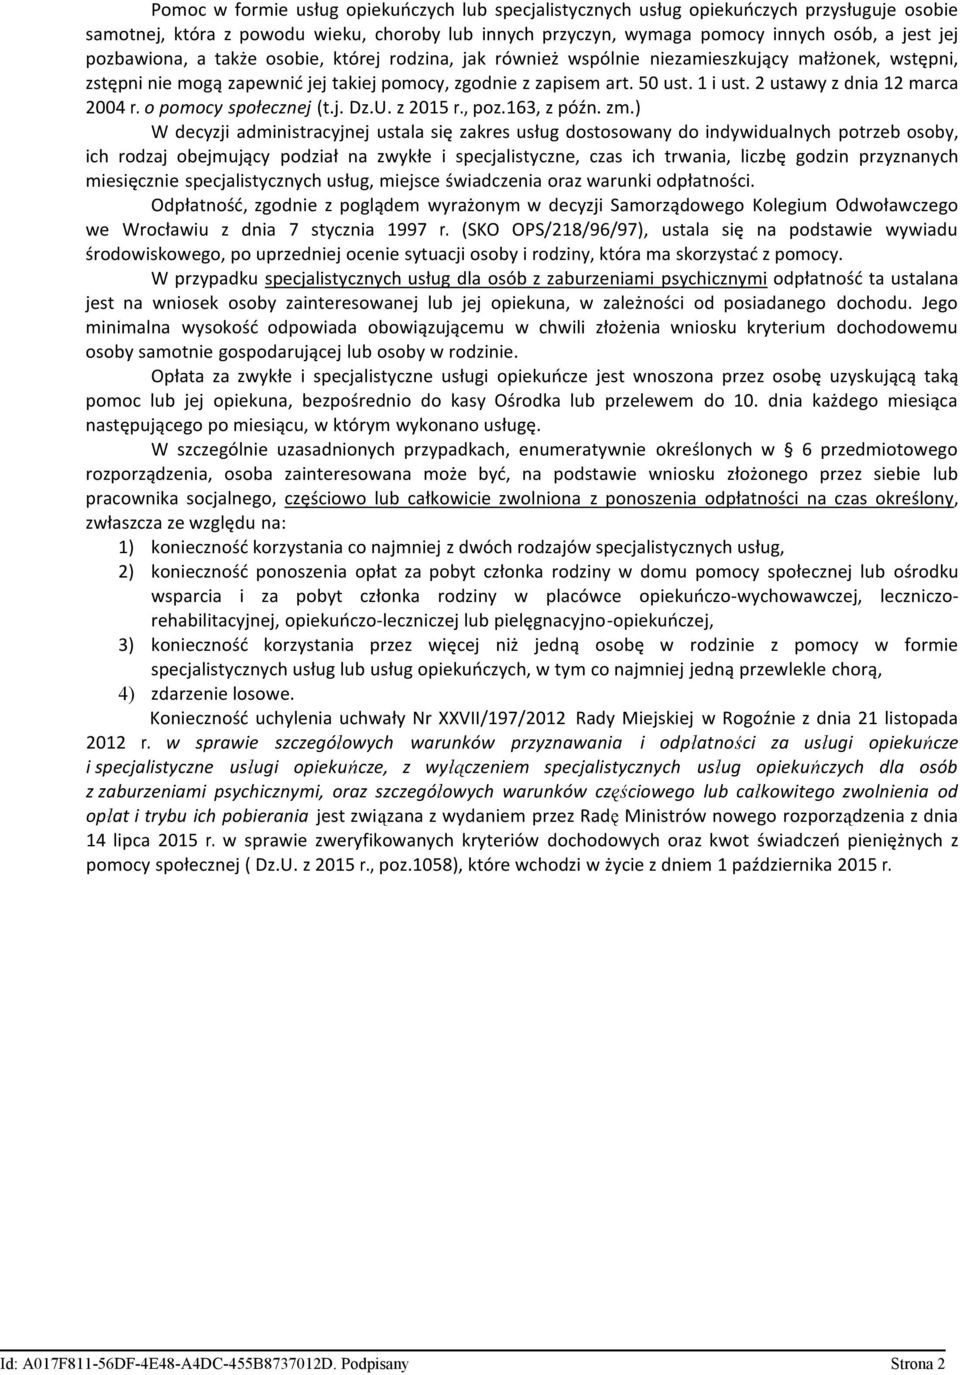 2 ustawy z dnia 12 marca 2004 r. o pomocy społecznej (t.j. Dz.U. z 2015 r., poz.163, z późn. zm.